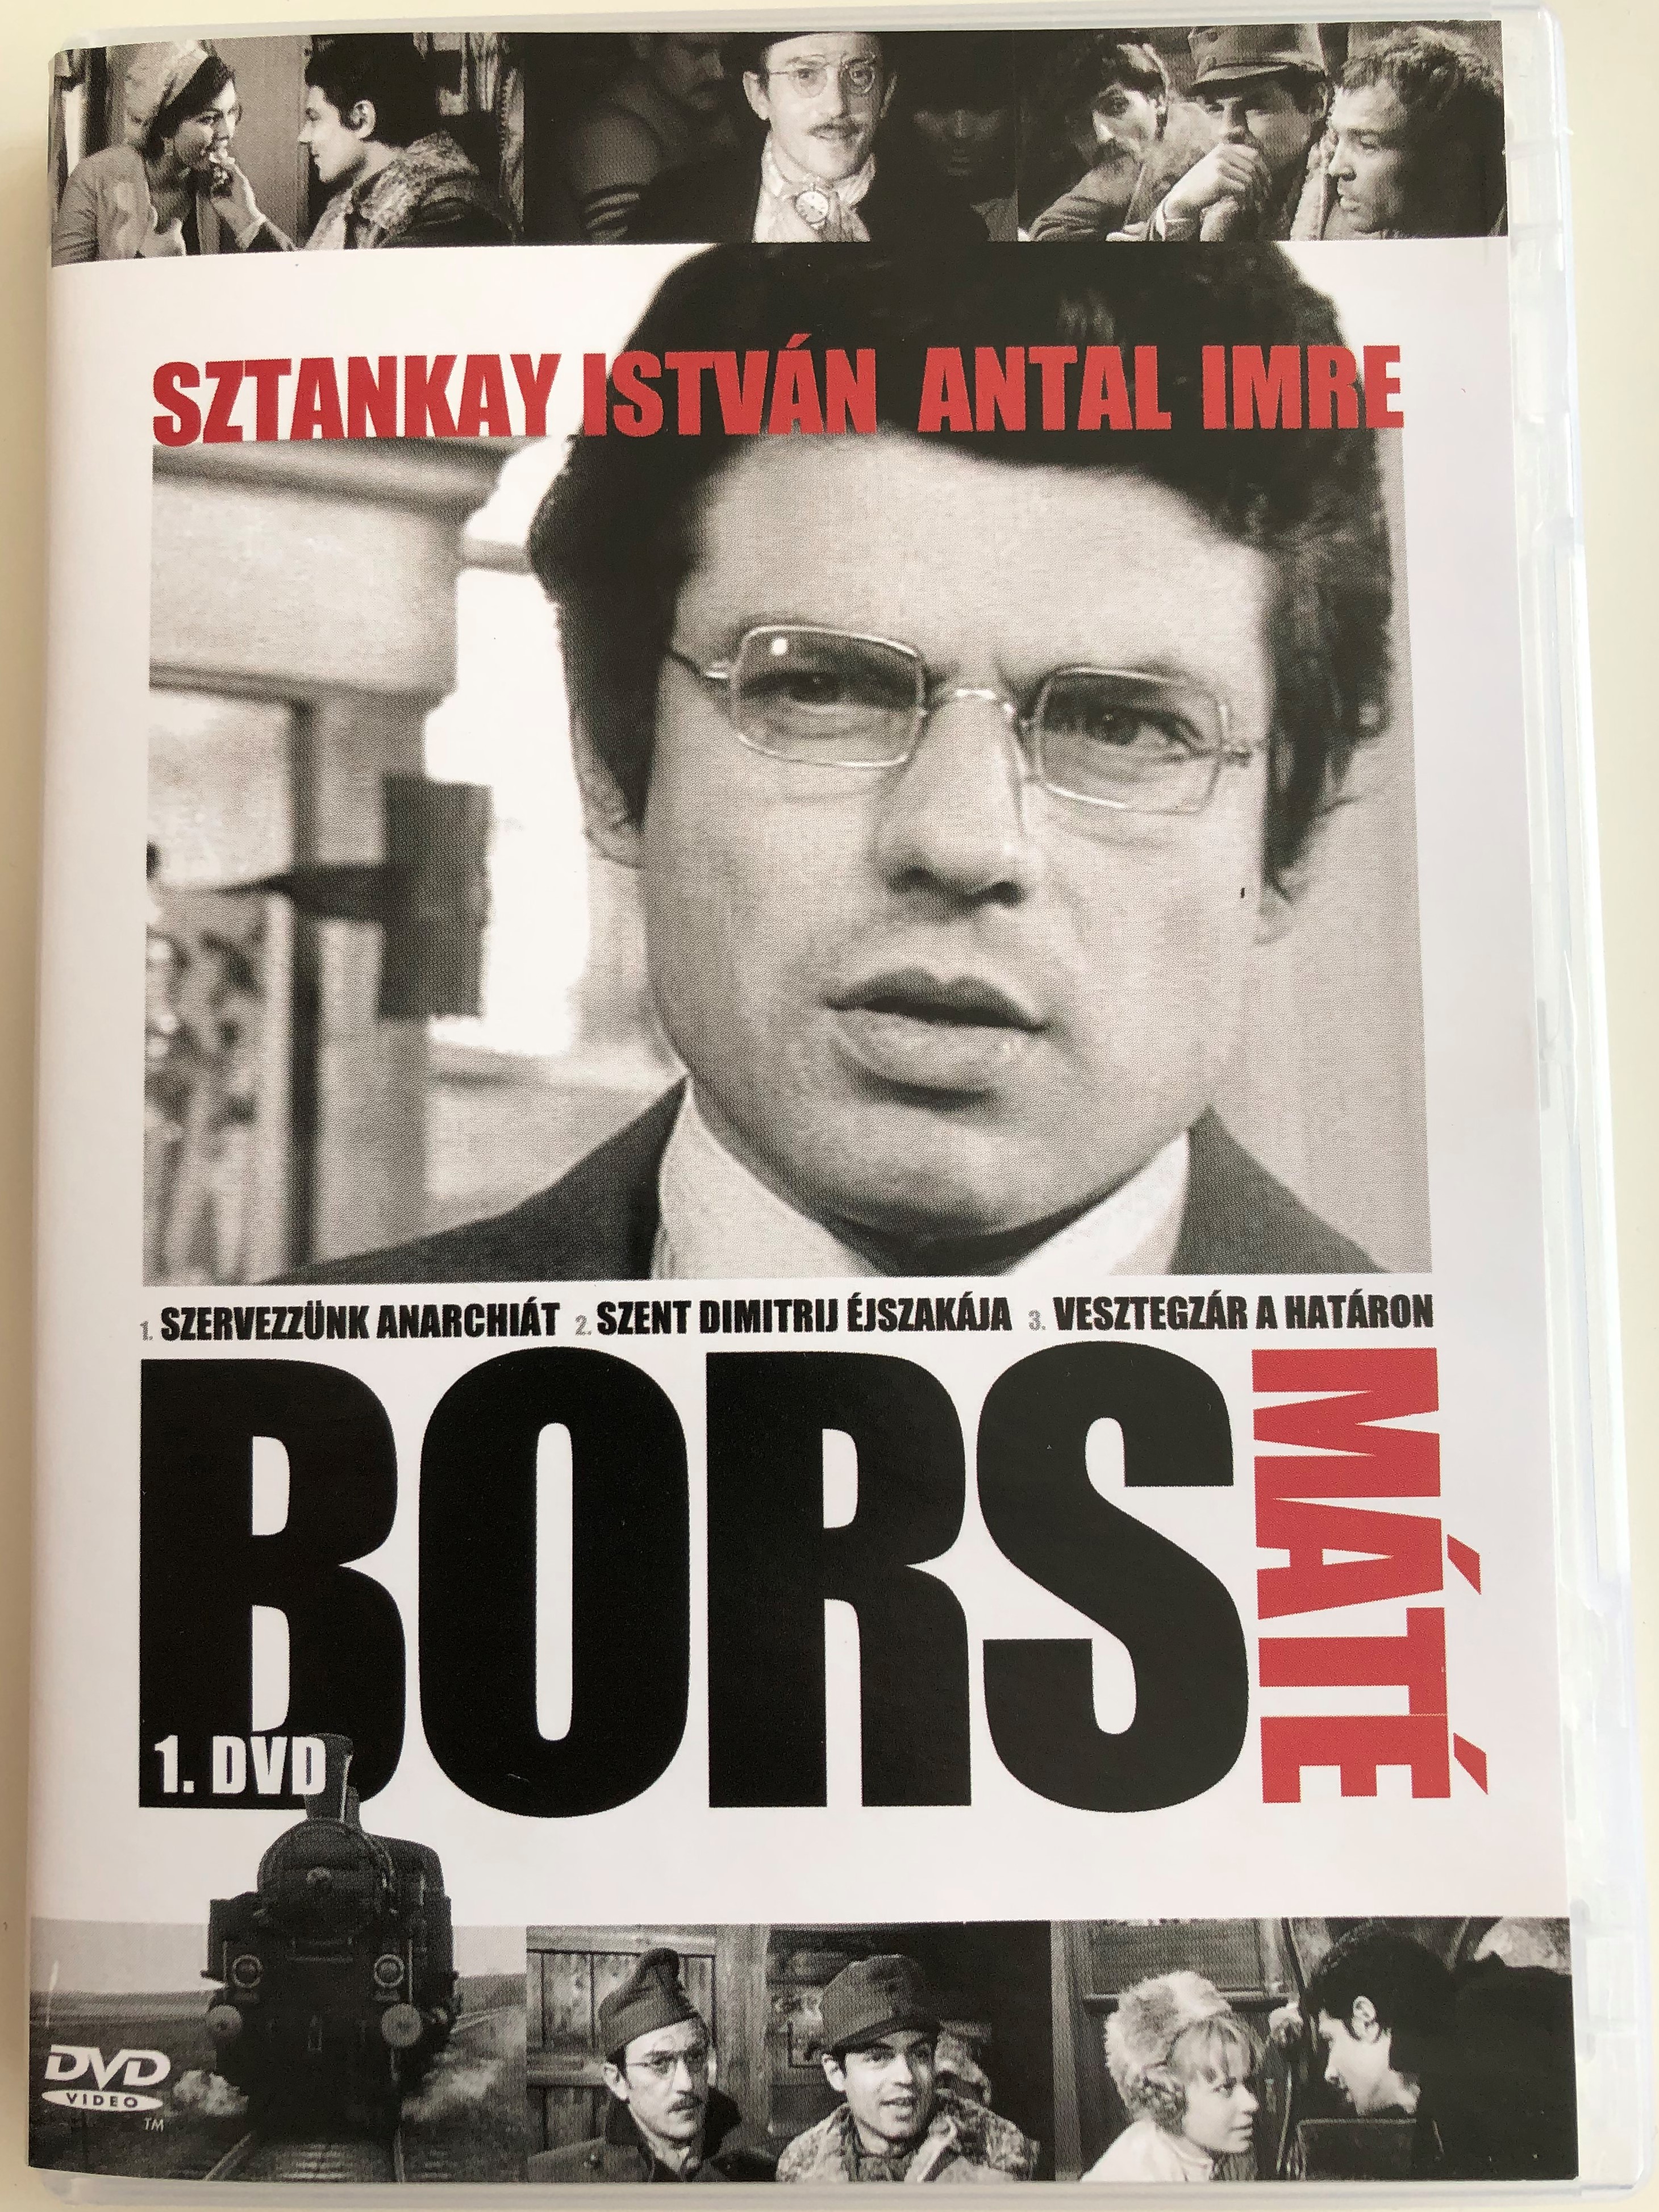 Bors 1. DVD 1968 Bors Máté / Directed by Herskó János / Sztankay István,  Antal Imre, Rajz János, Madaras József / Hungarian TV Series / Episodes 1-3  - bibleinmylanguage